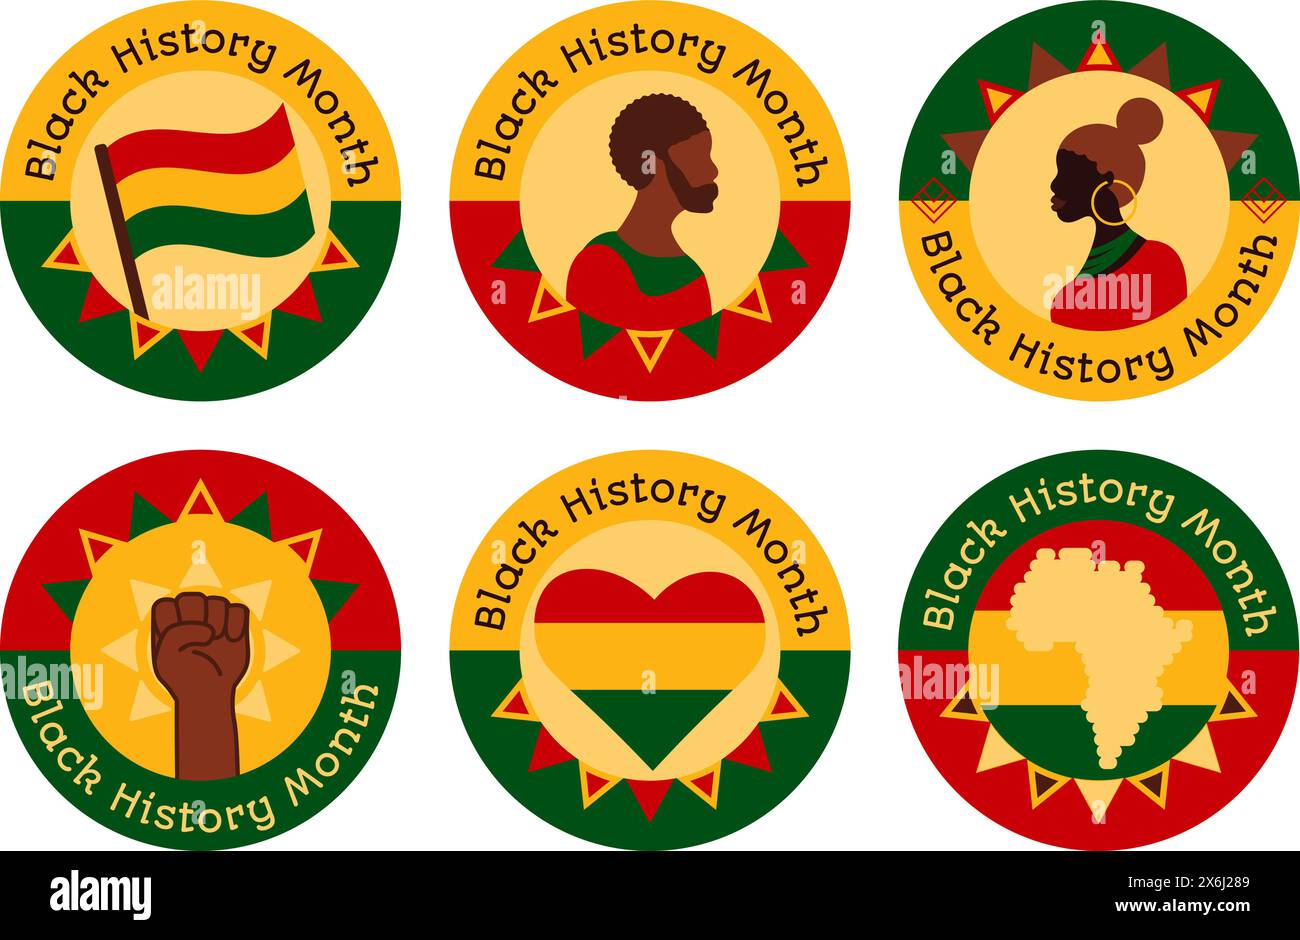 Schwarze Geschichte Monat Abzeichen mit der Inschrift. Afroamerikanische Geschichte Monat Schilder in Rot, Gelb und Grün, die Leistungen gewidmet sind b Stock Vektor